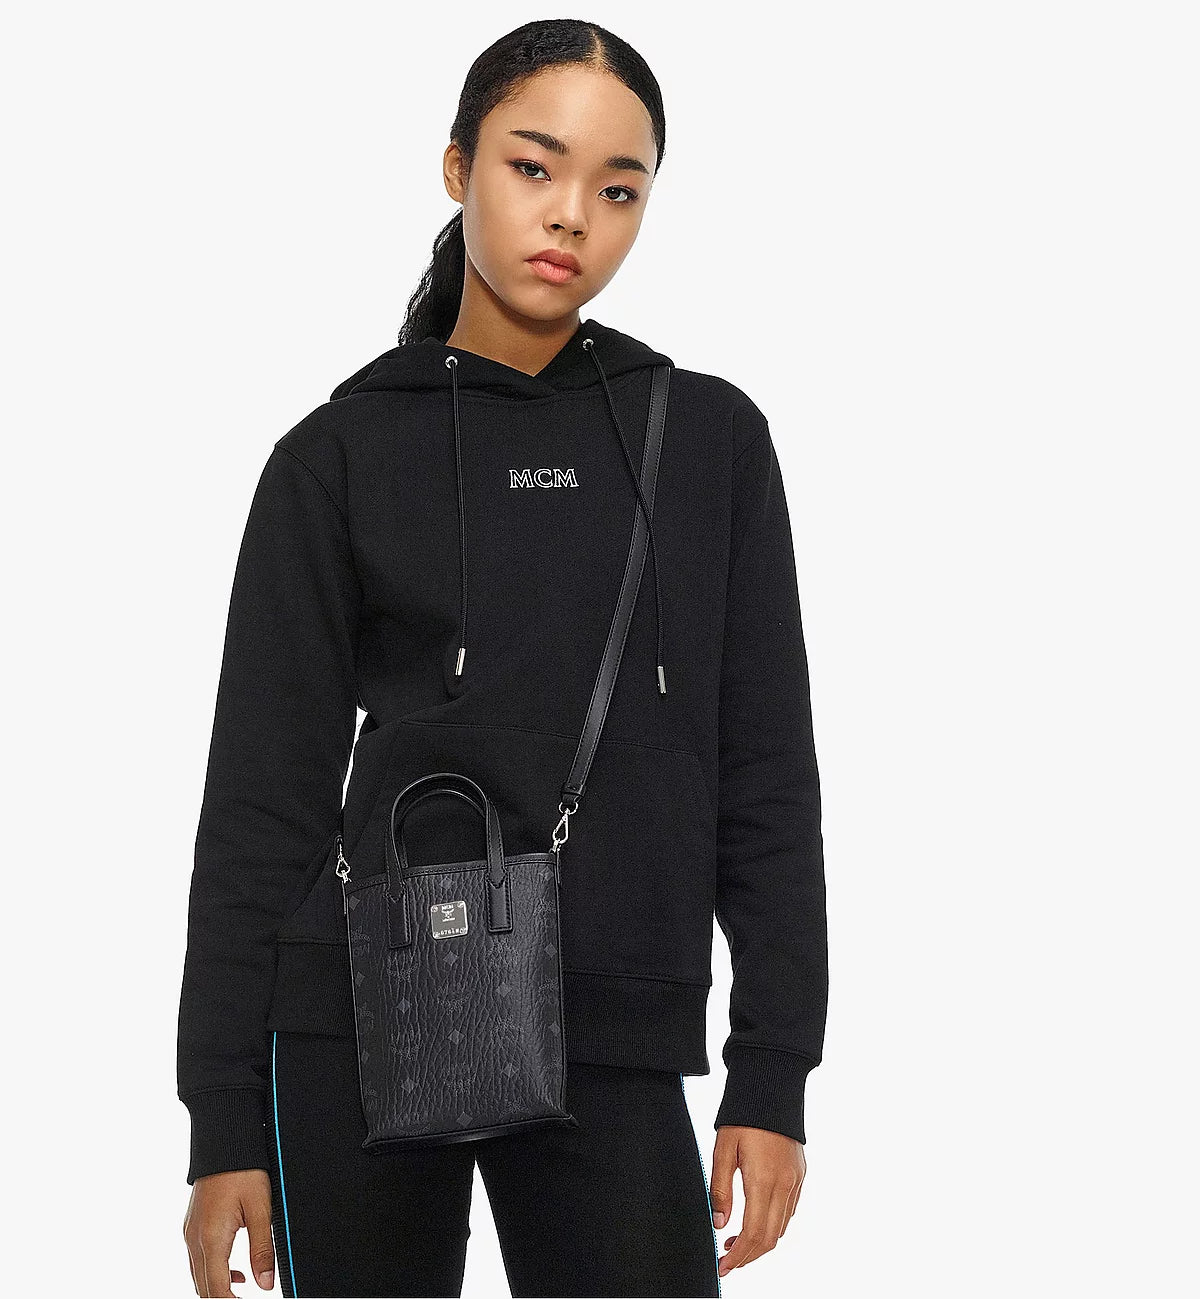 MCM 'essential' Shoulder Bag in Black